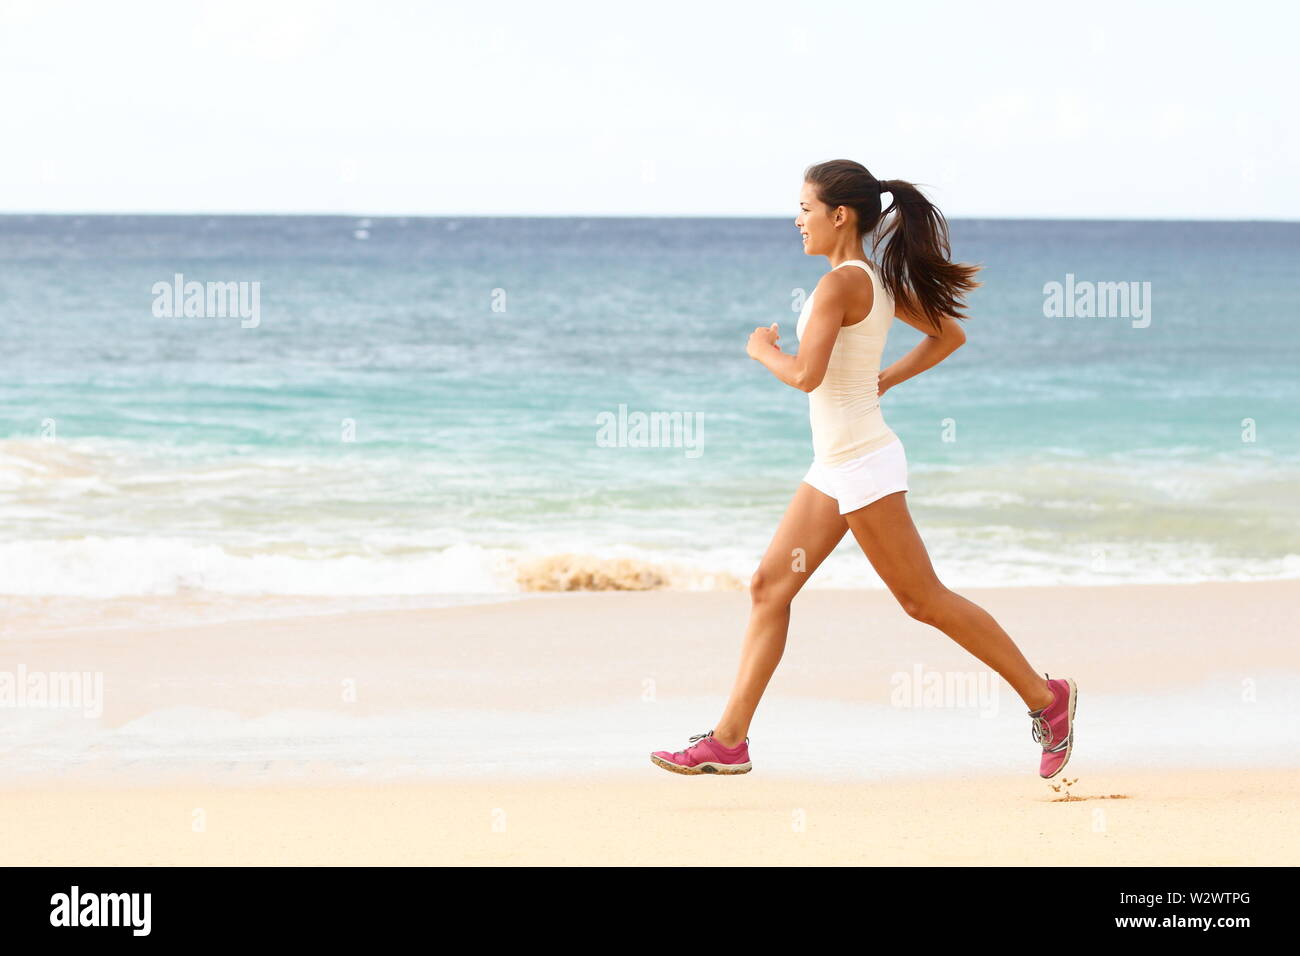 Passen junge Frau läuft entlang der Kante des Surfen auf einem sonnigen tropischen Strand in ihrer Sportbekleidung mit ihren langen Haaren. Läuferin Trainieren mit Copyspace Stockfoto